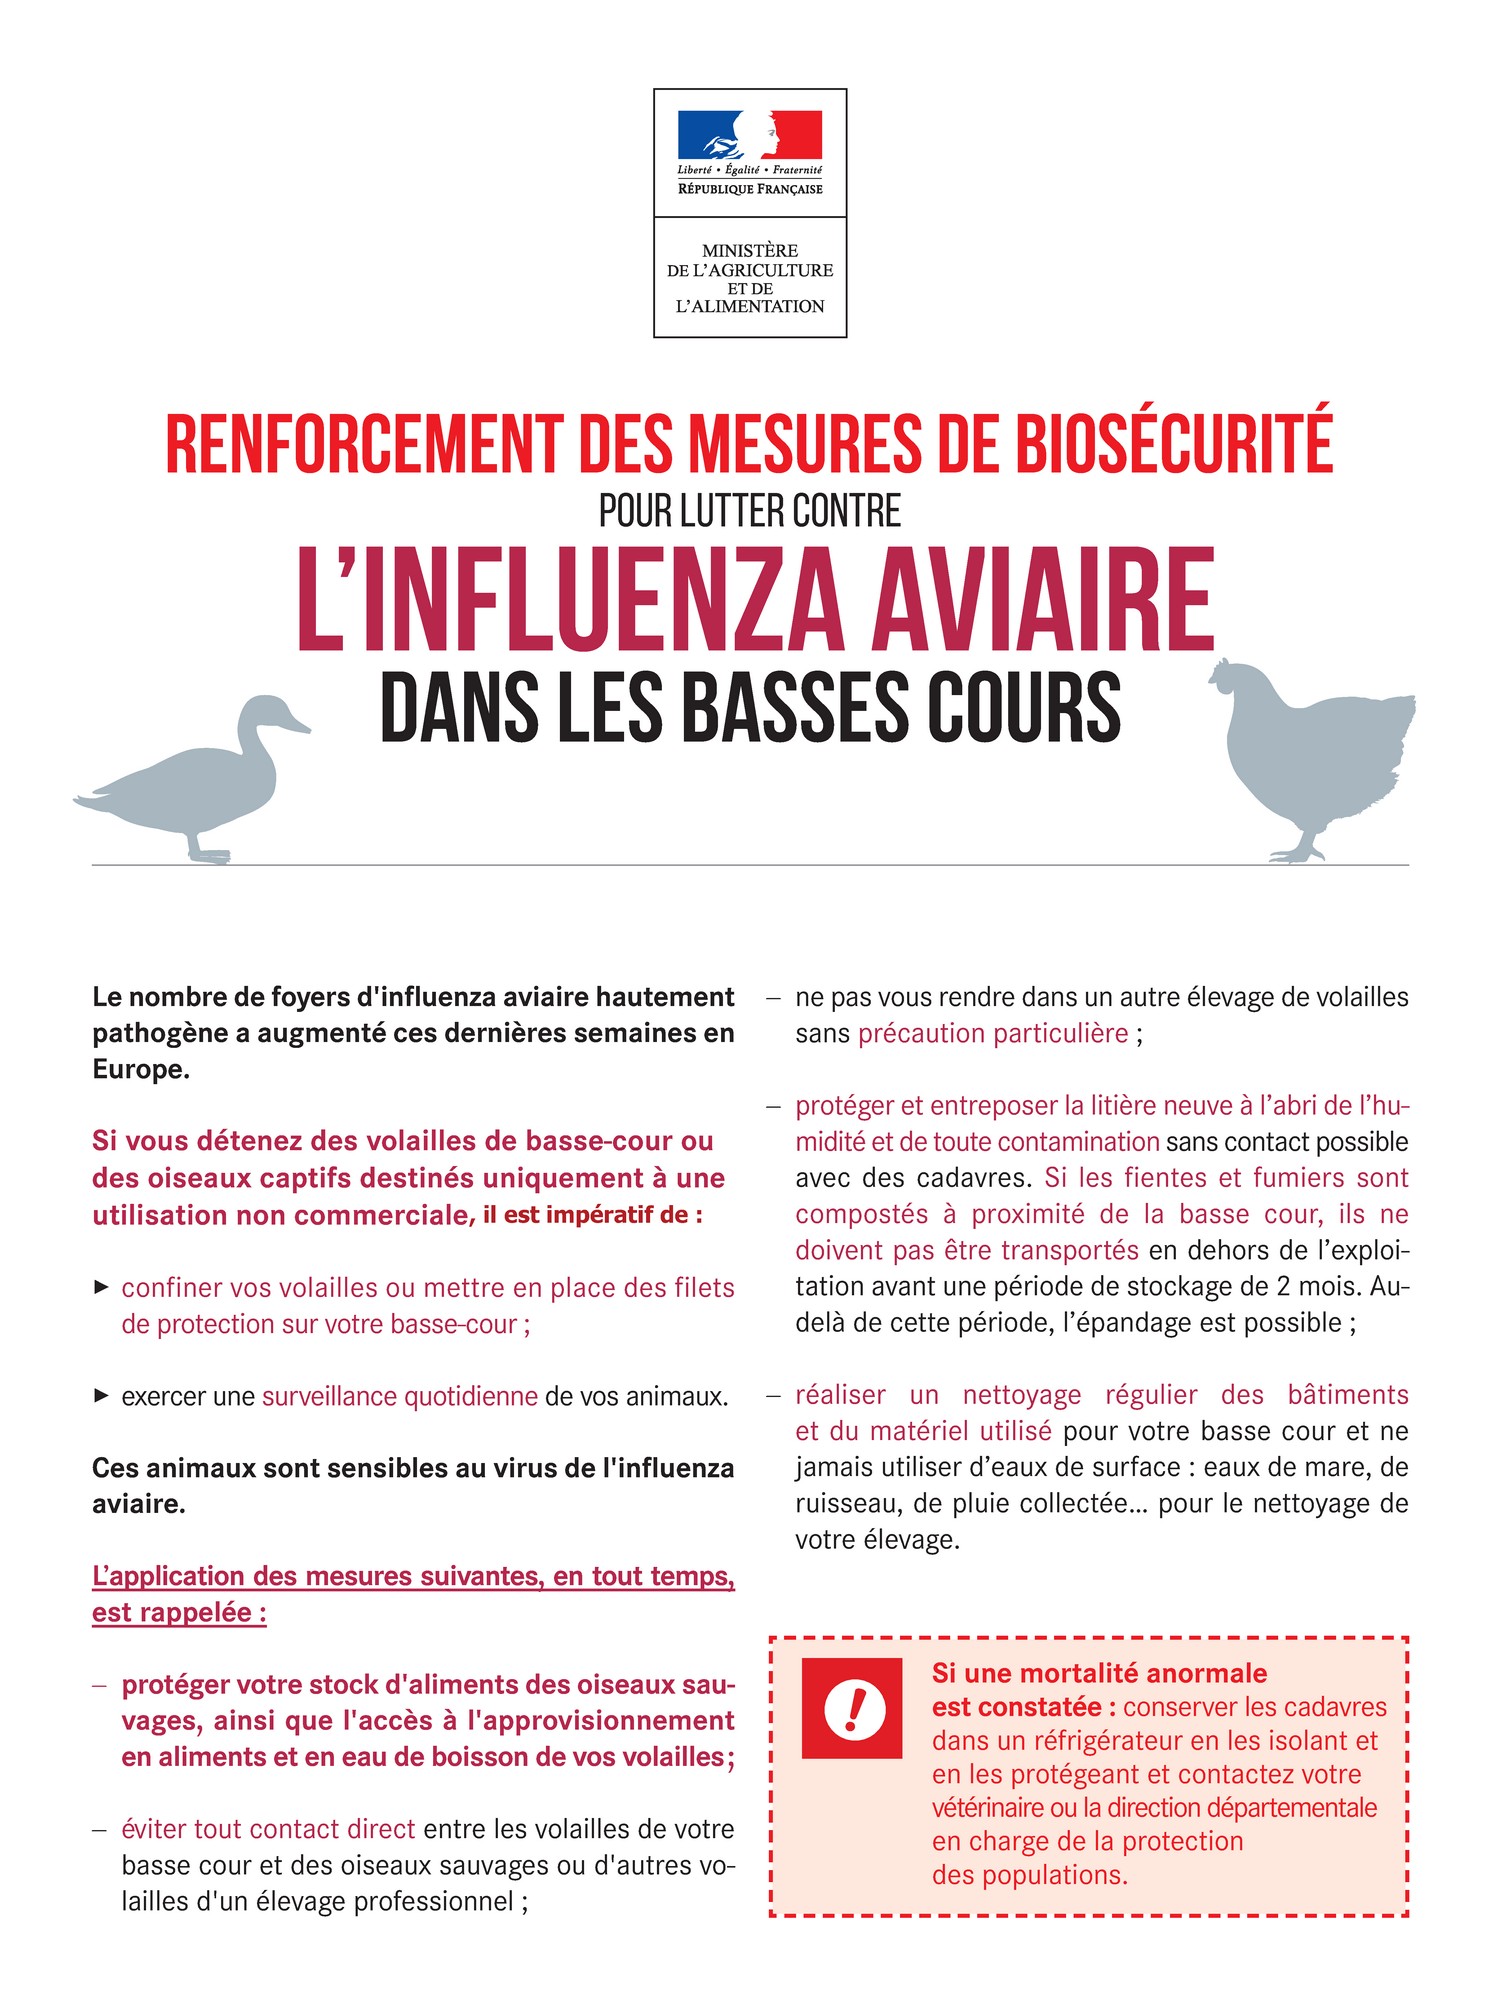 Influenza Aviaire - Renforcement de la biosécurité dans les basses cours 2.jpg